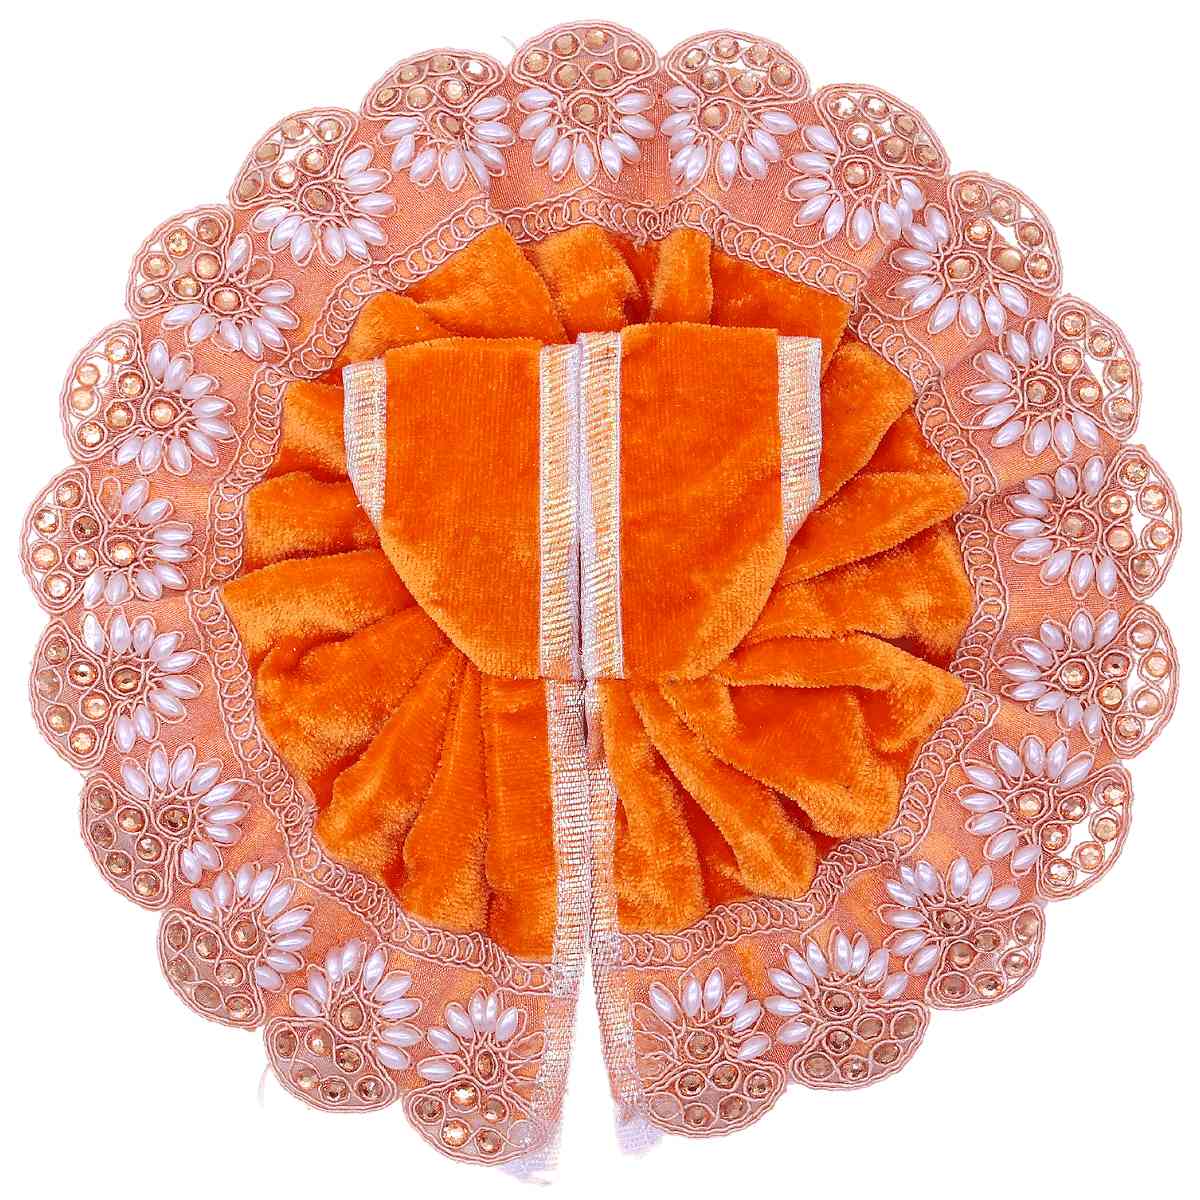 Stone decorated orange velvet dress for laddu gopal ji